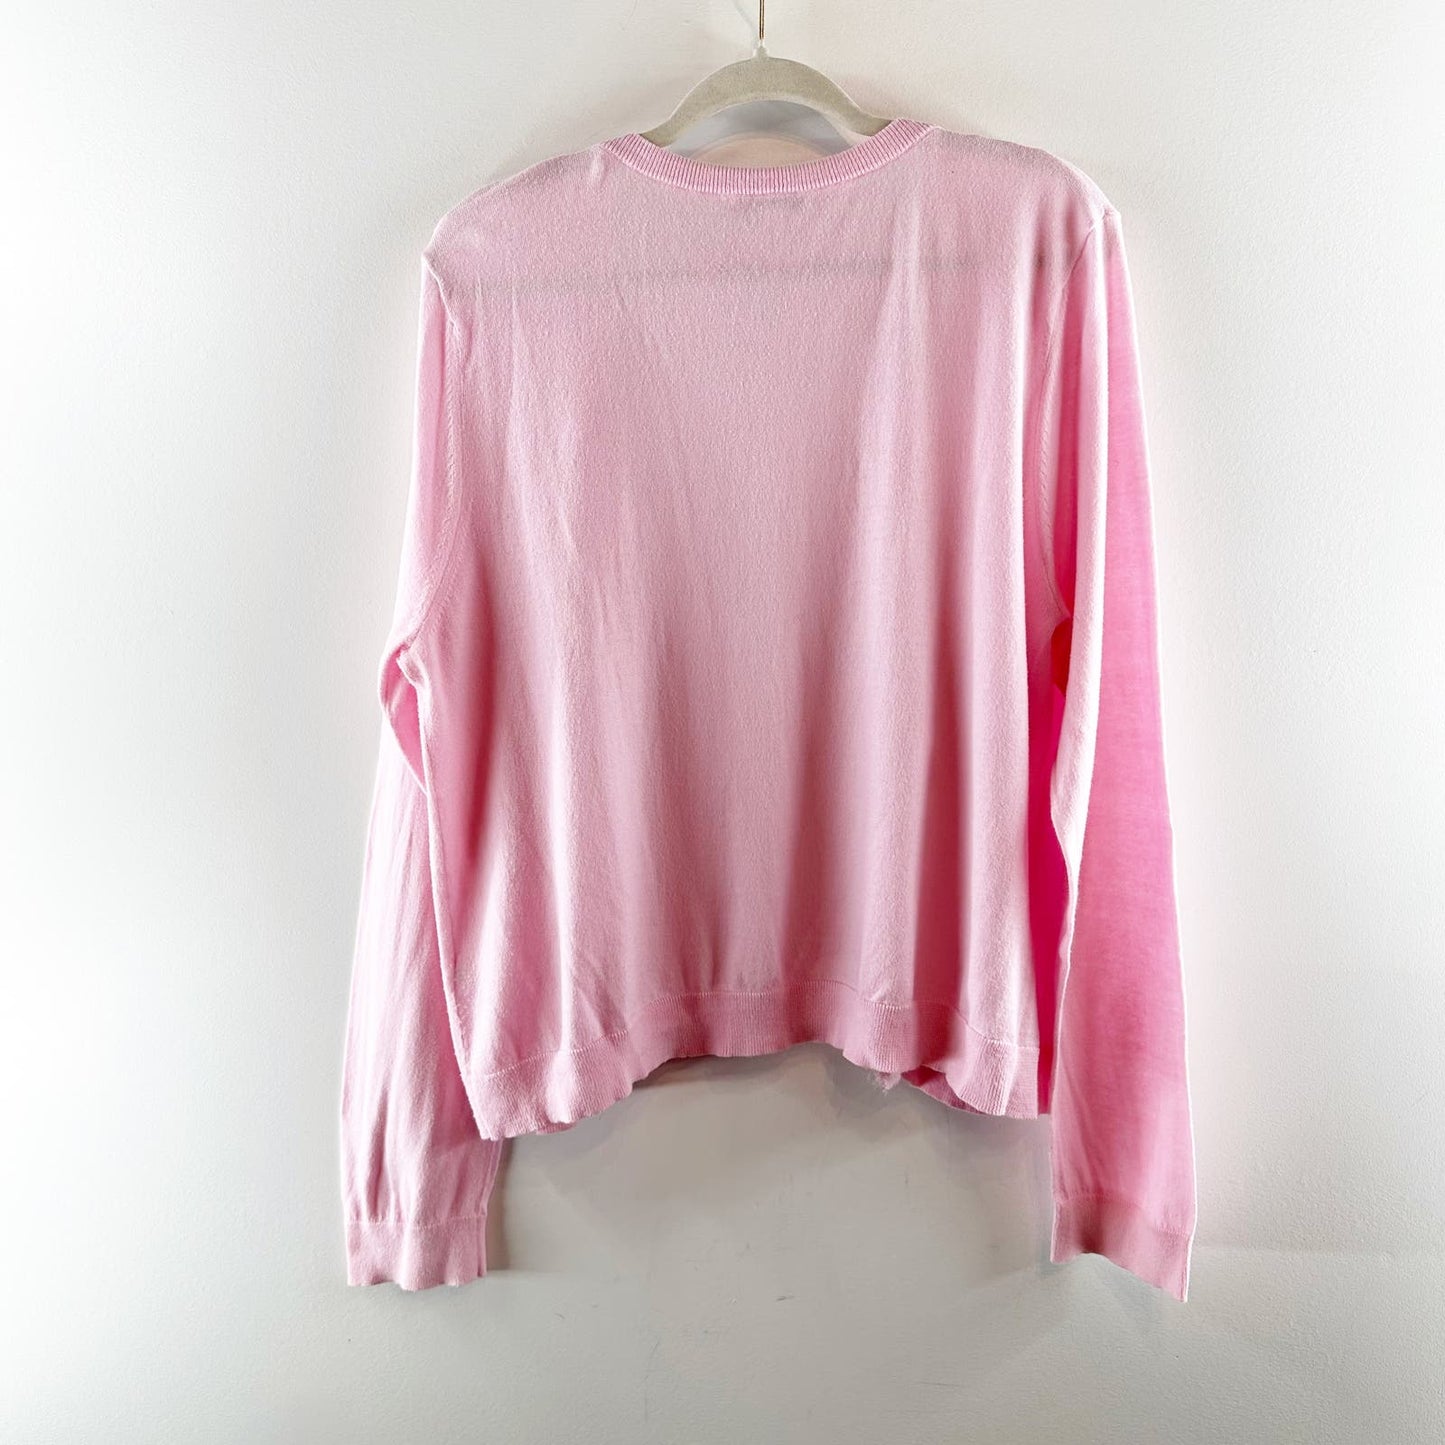 Garnett Hill Ruffle Long Sleeve Cardigan Sweater Pink Cotton XL